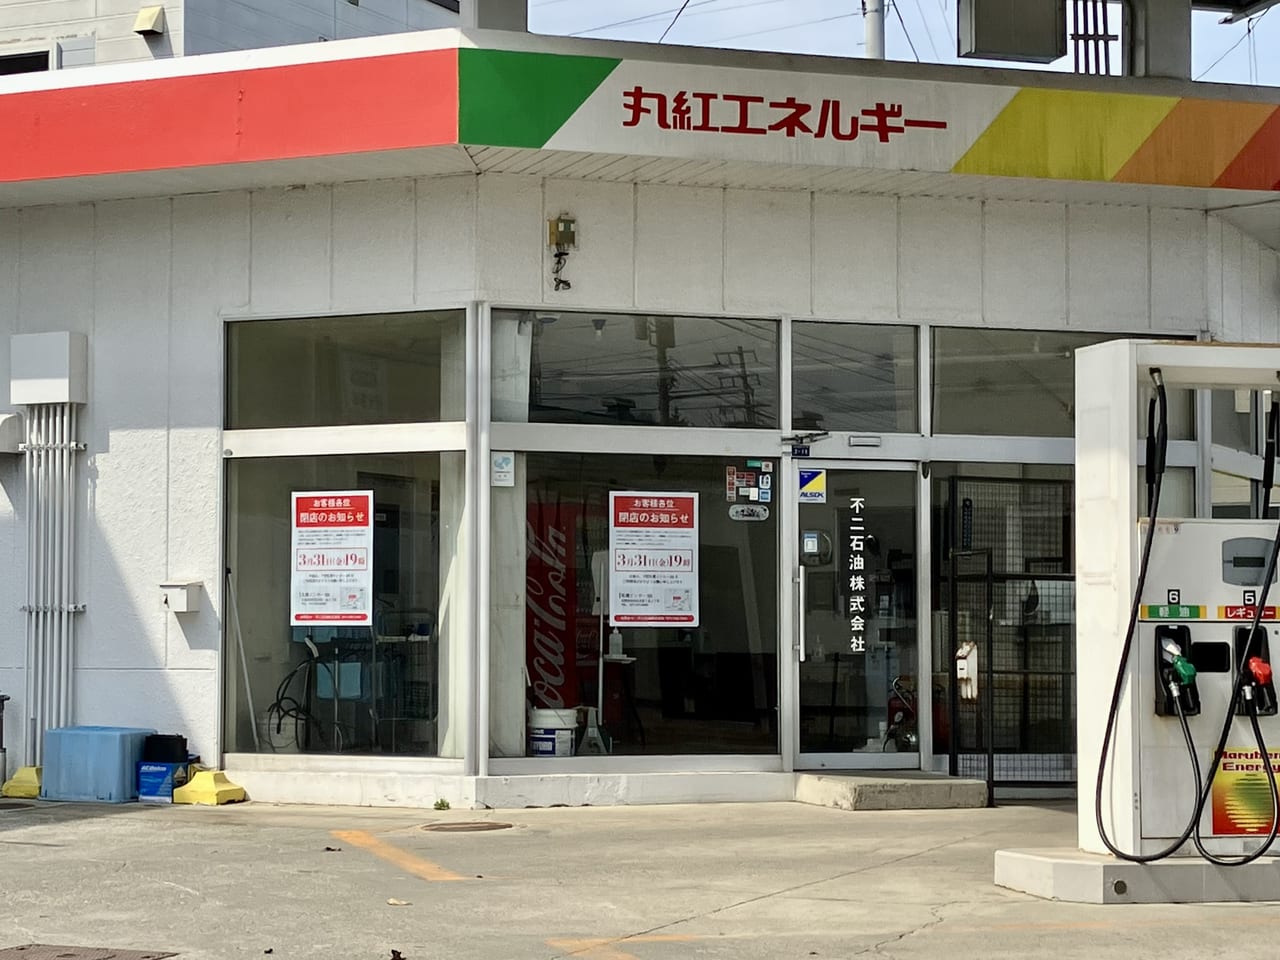 3月31日19時で閉店の「丸紅エネルギー苗穂サービスステーション」。閉店後のお店の様子を見てました。